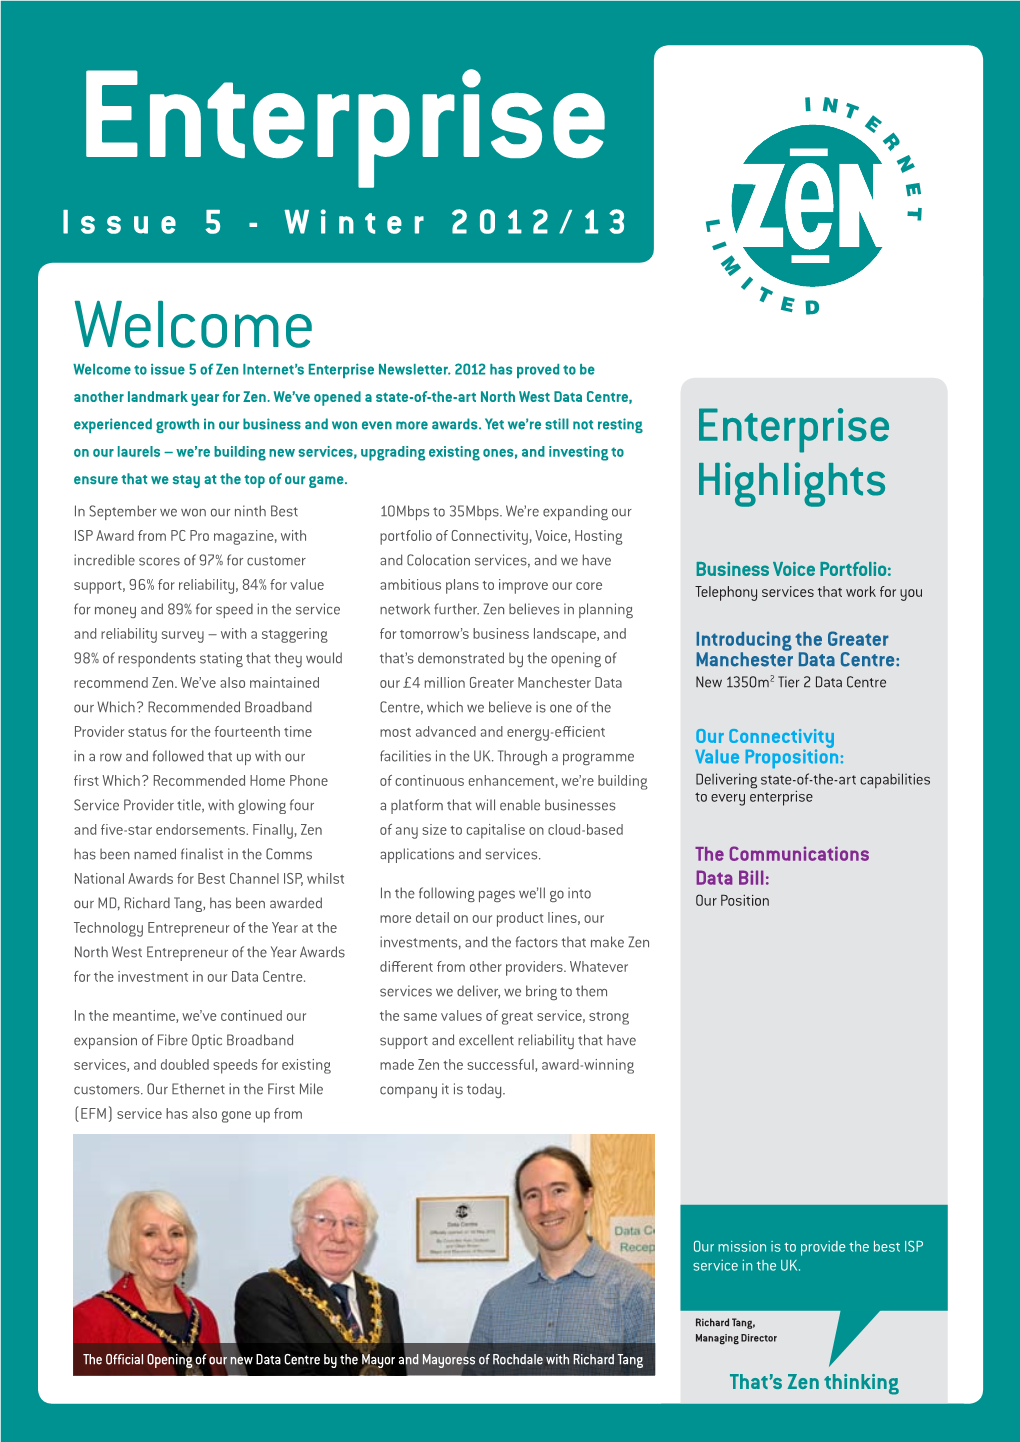 Email Us at Enterprise@Zen.Co.Uk